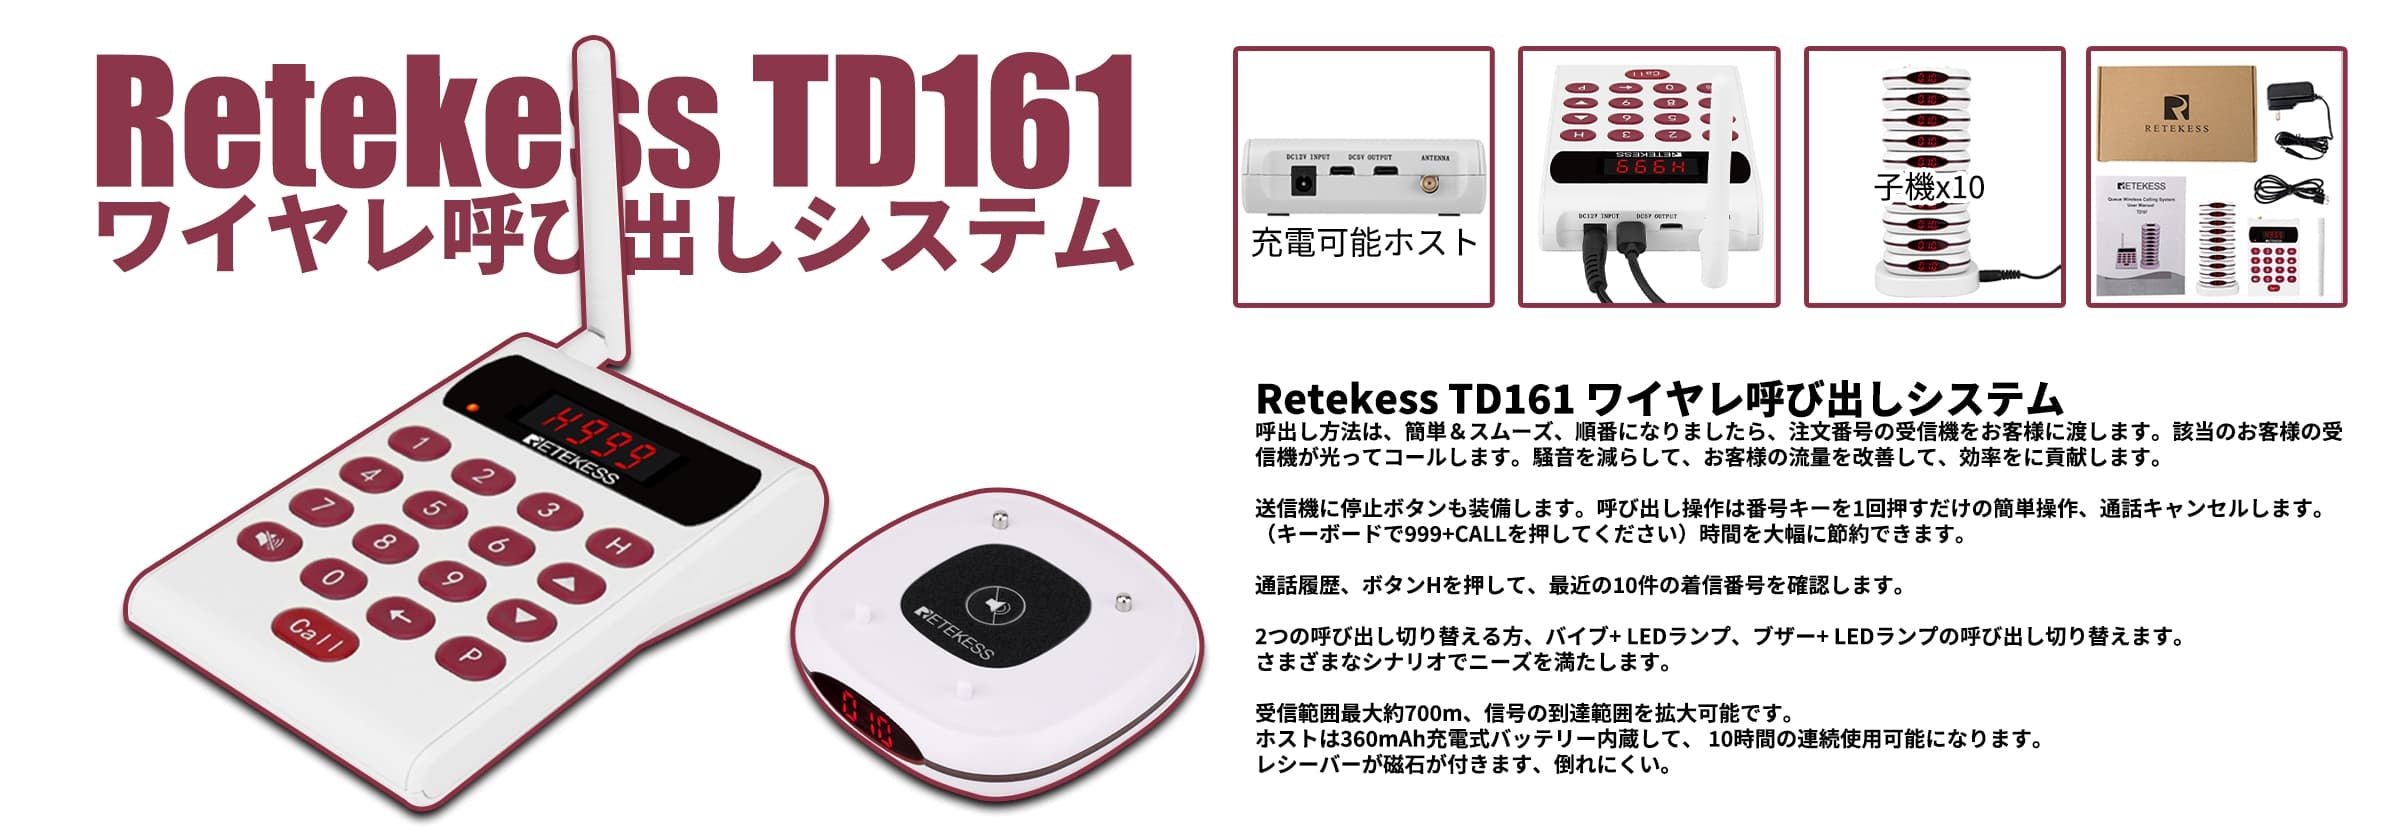 Retekess TD161 ワイヤレ呼び出しシステム